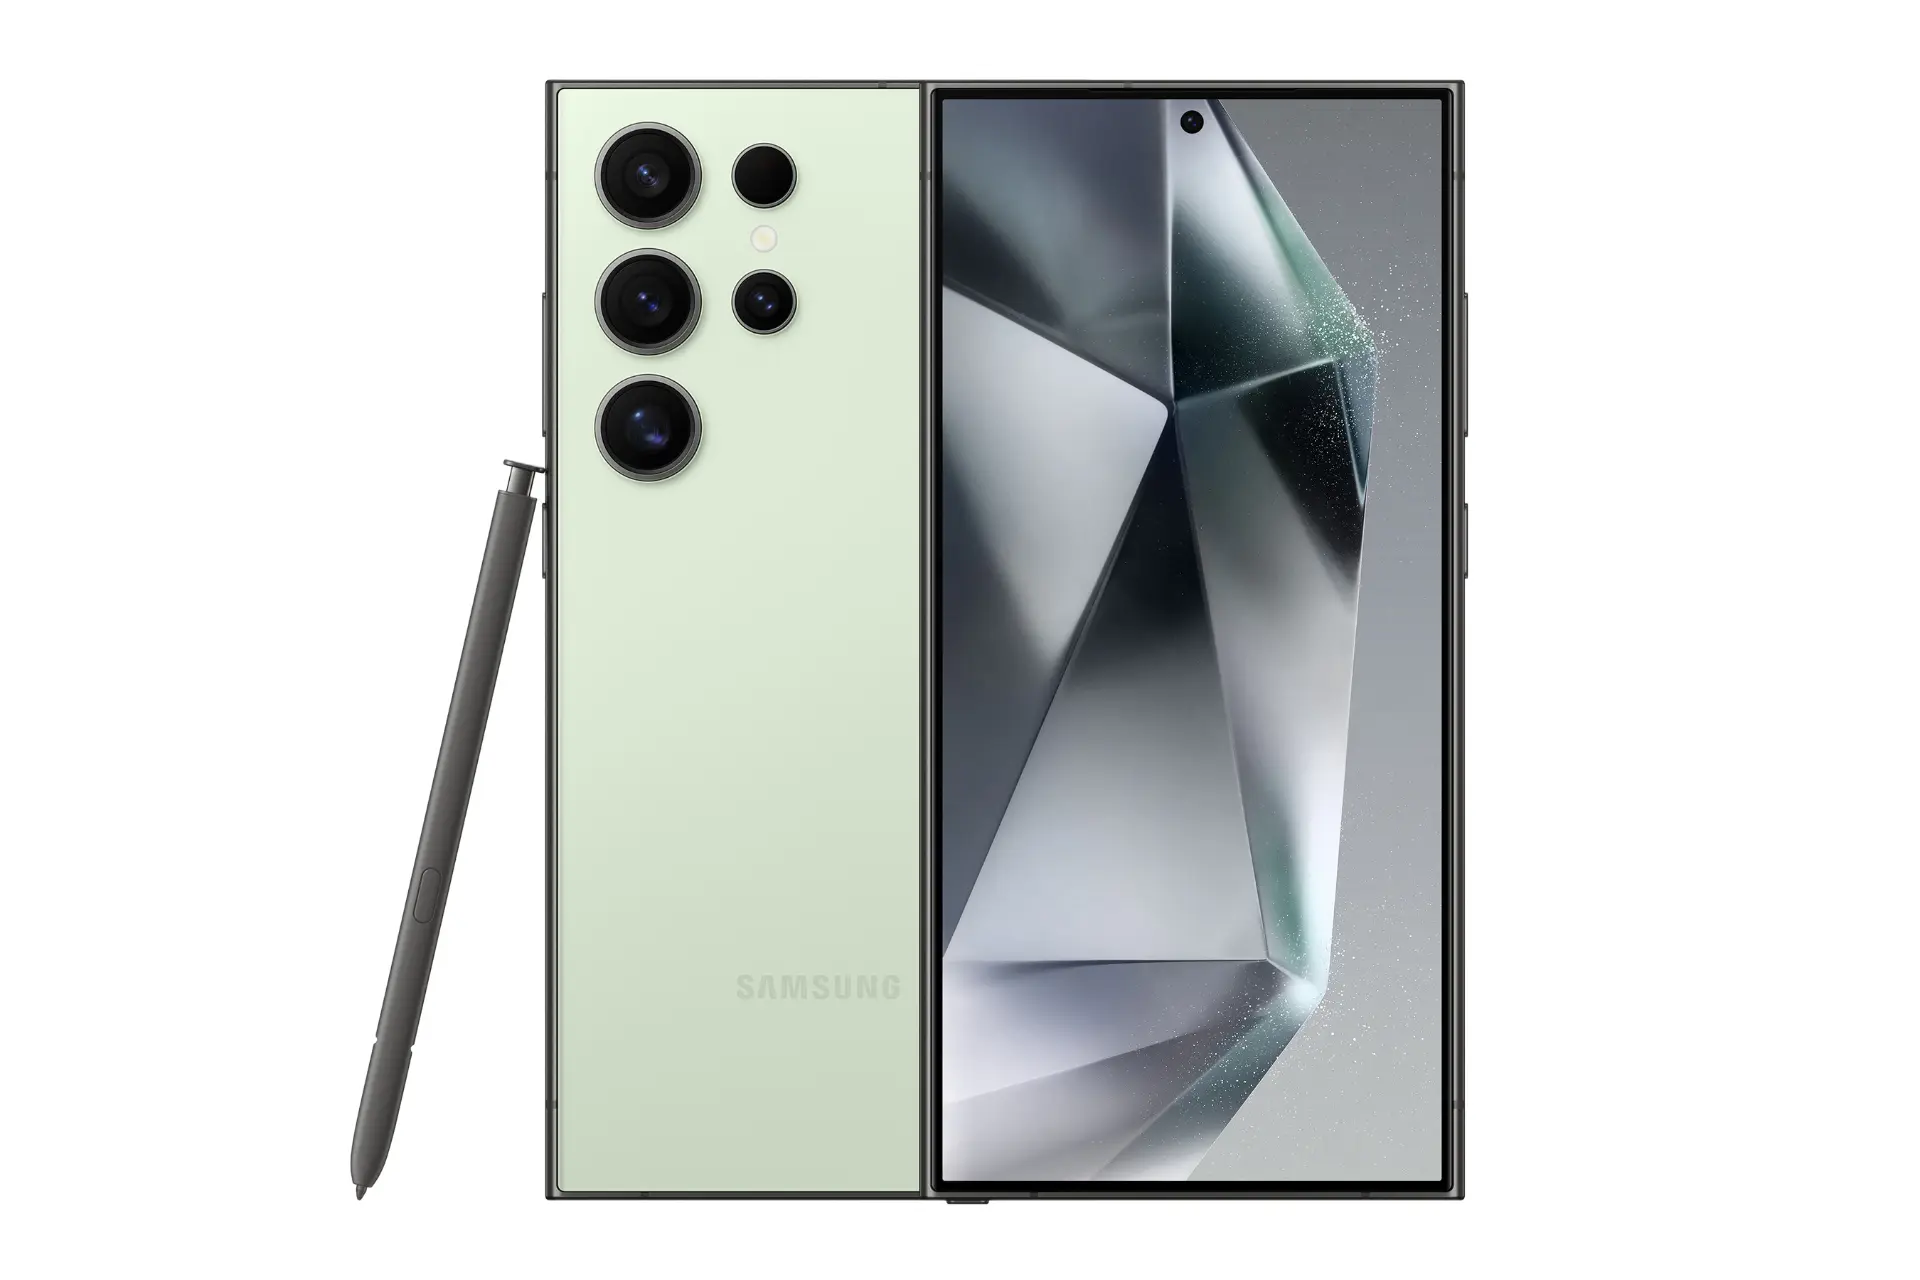 نمای کلی گوشی موبایل گلکسی اس 24 اولترا سامسونگ مشکی / Samsung Galaxy S24 Ultra با نمایشگر روشن و نمایش لوگو، دوربین های پنل پشت و قلم رنگ سبز